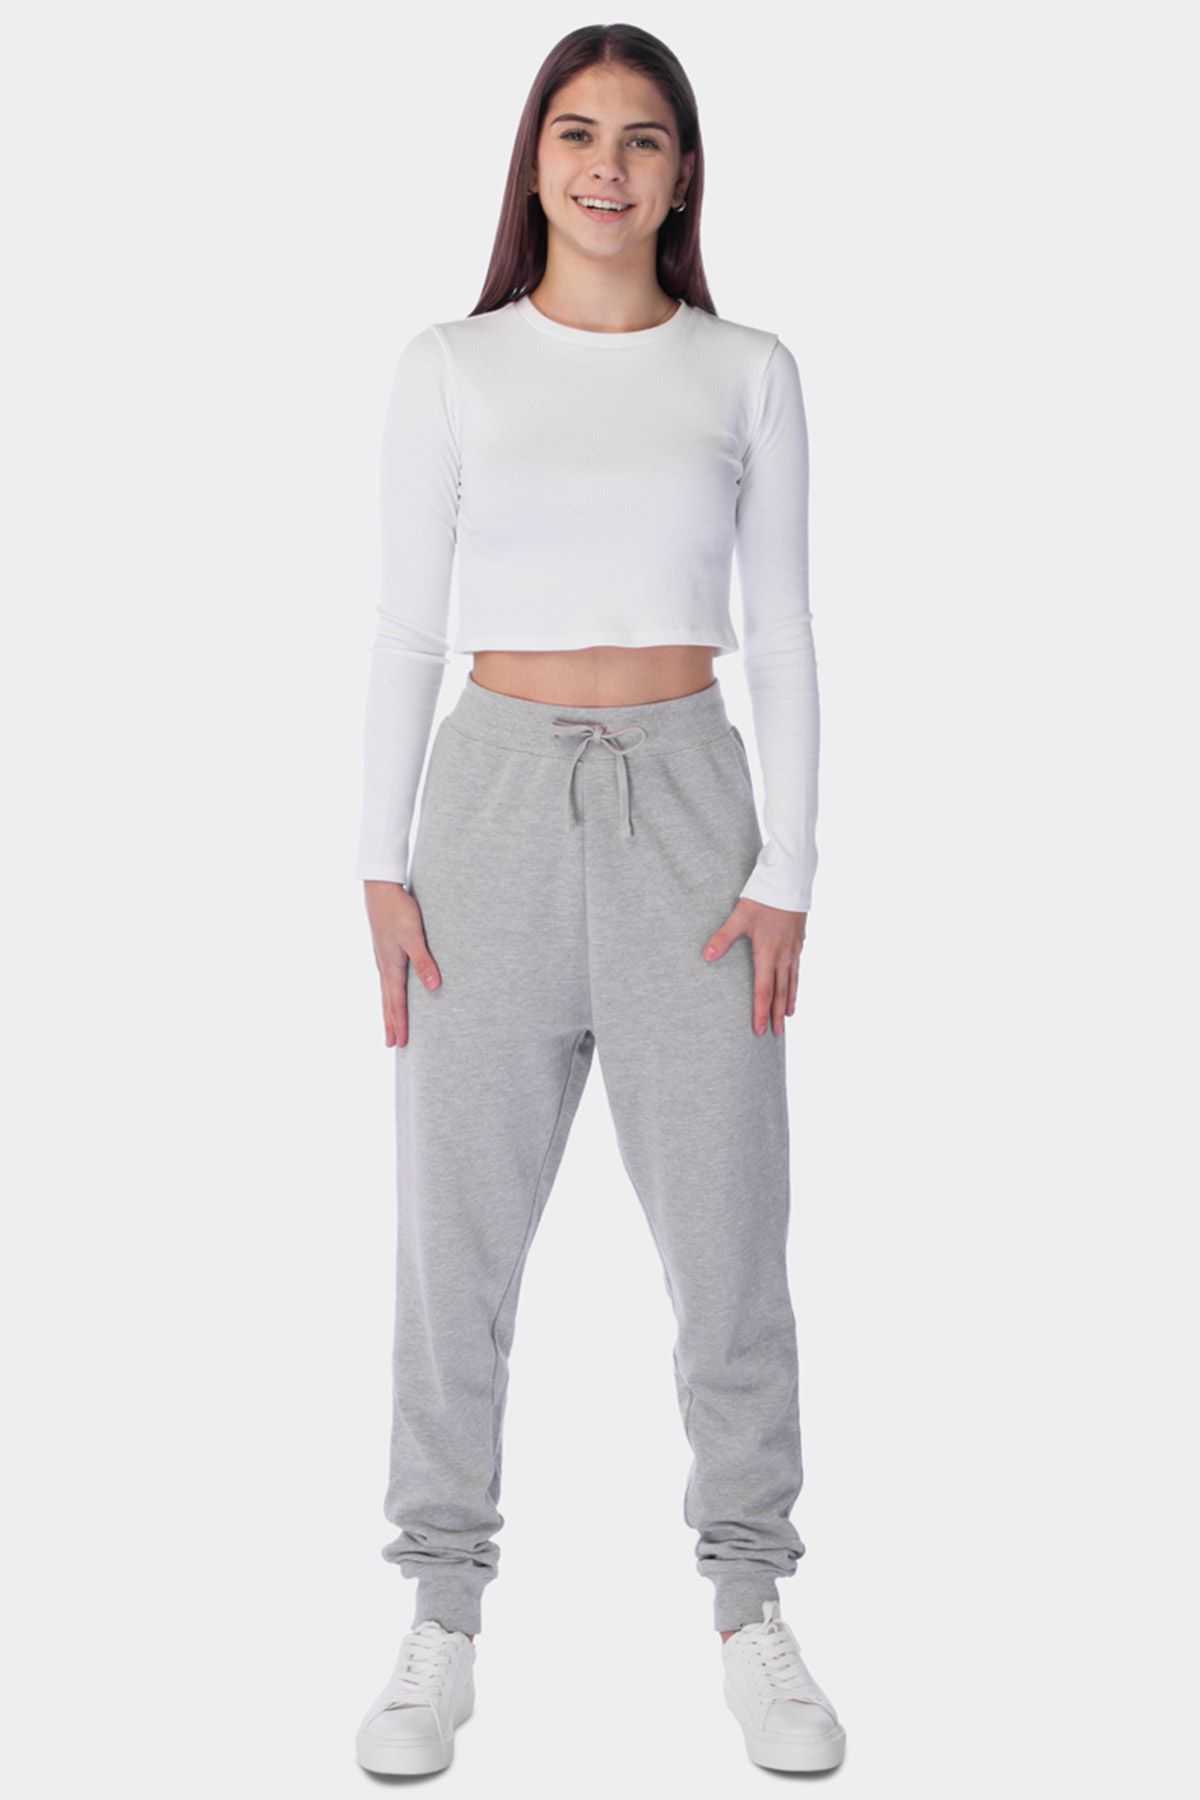 Brilliant Basics Women's Basic Fleece Track Pants - Grey Marl - Size Large